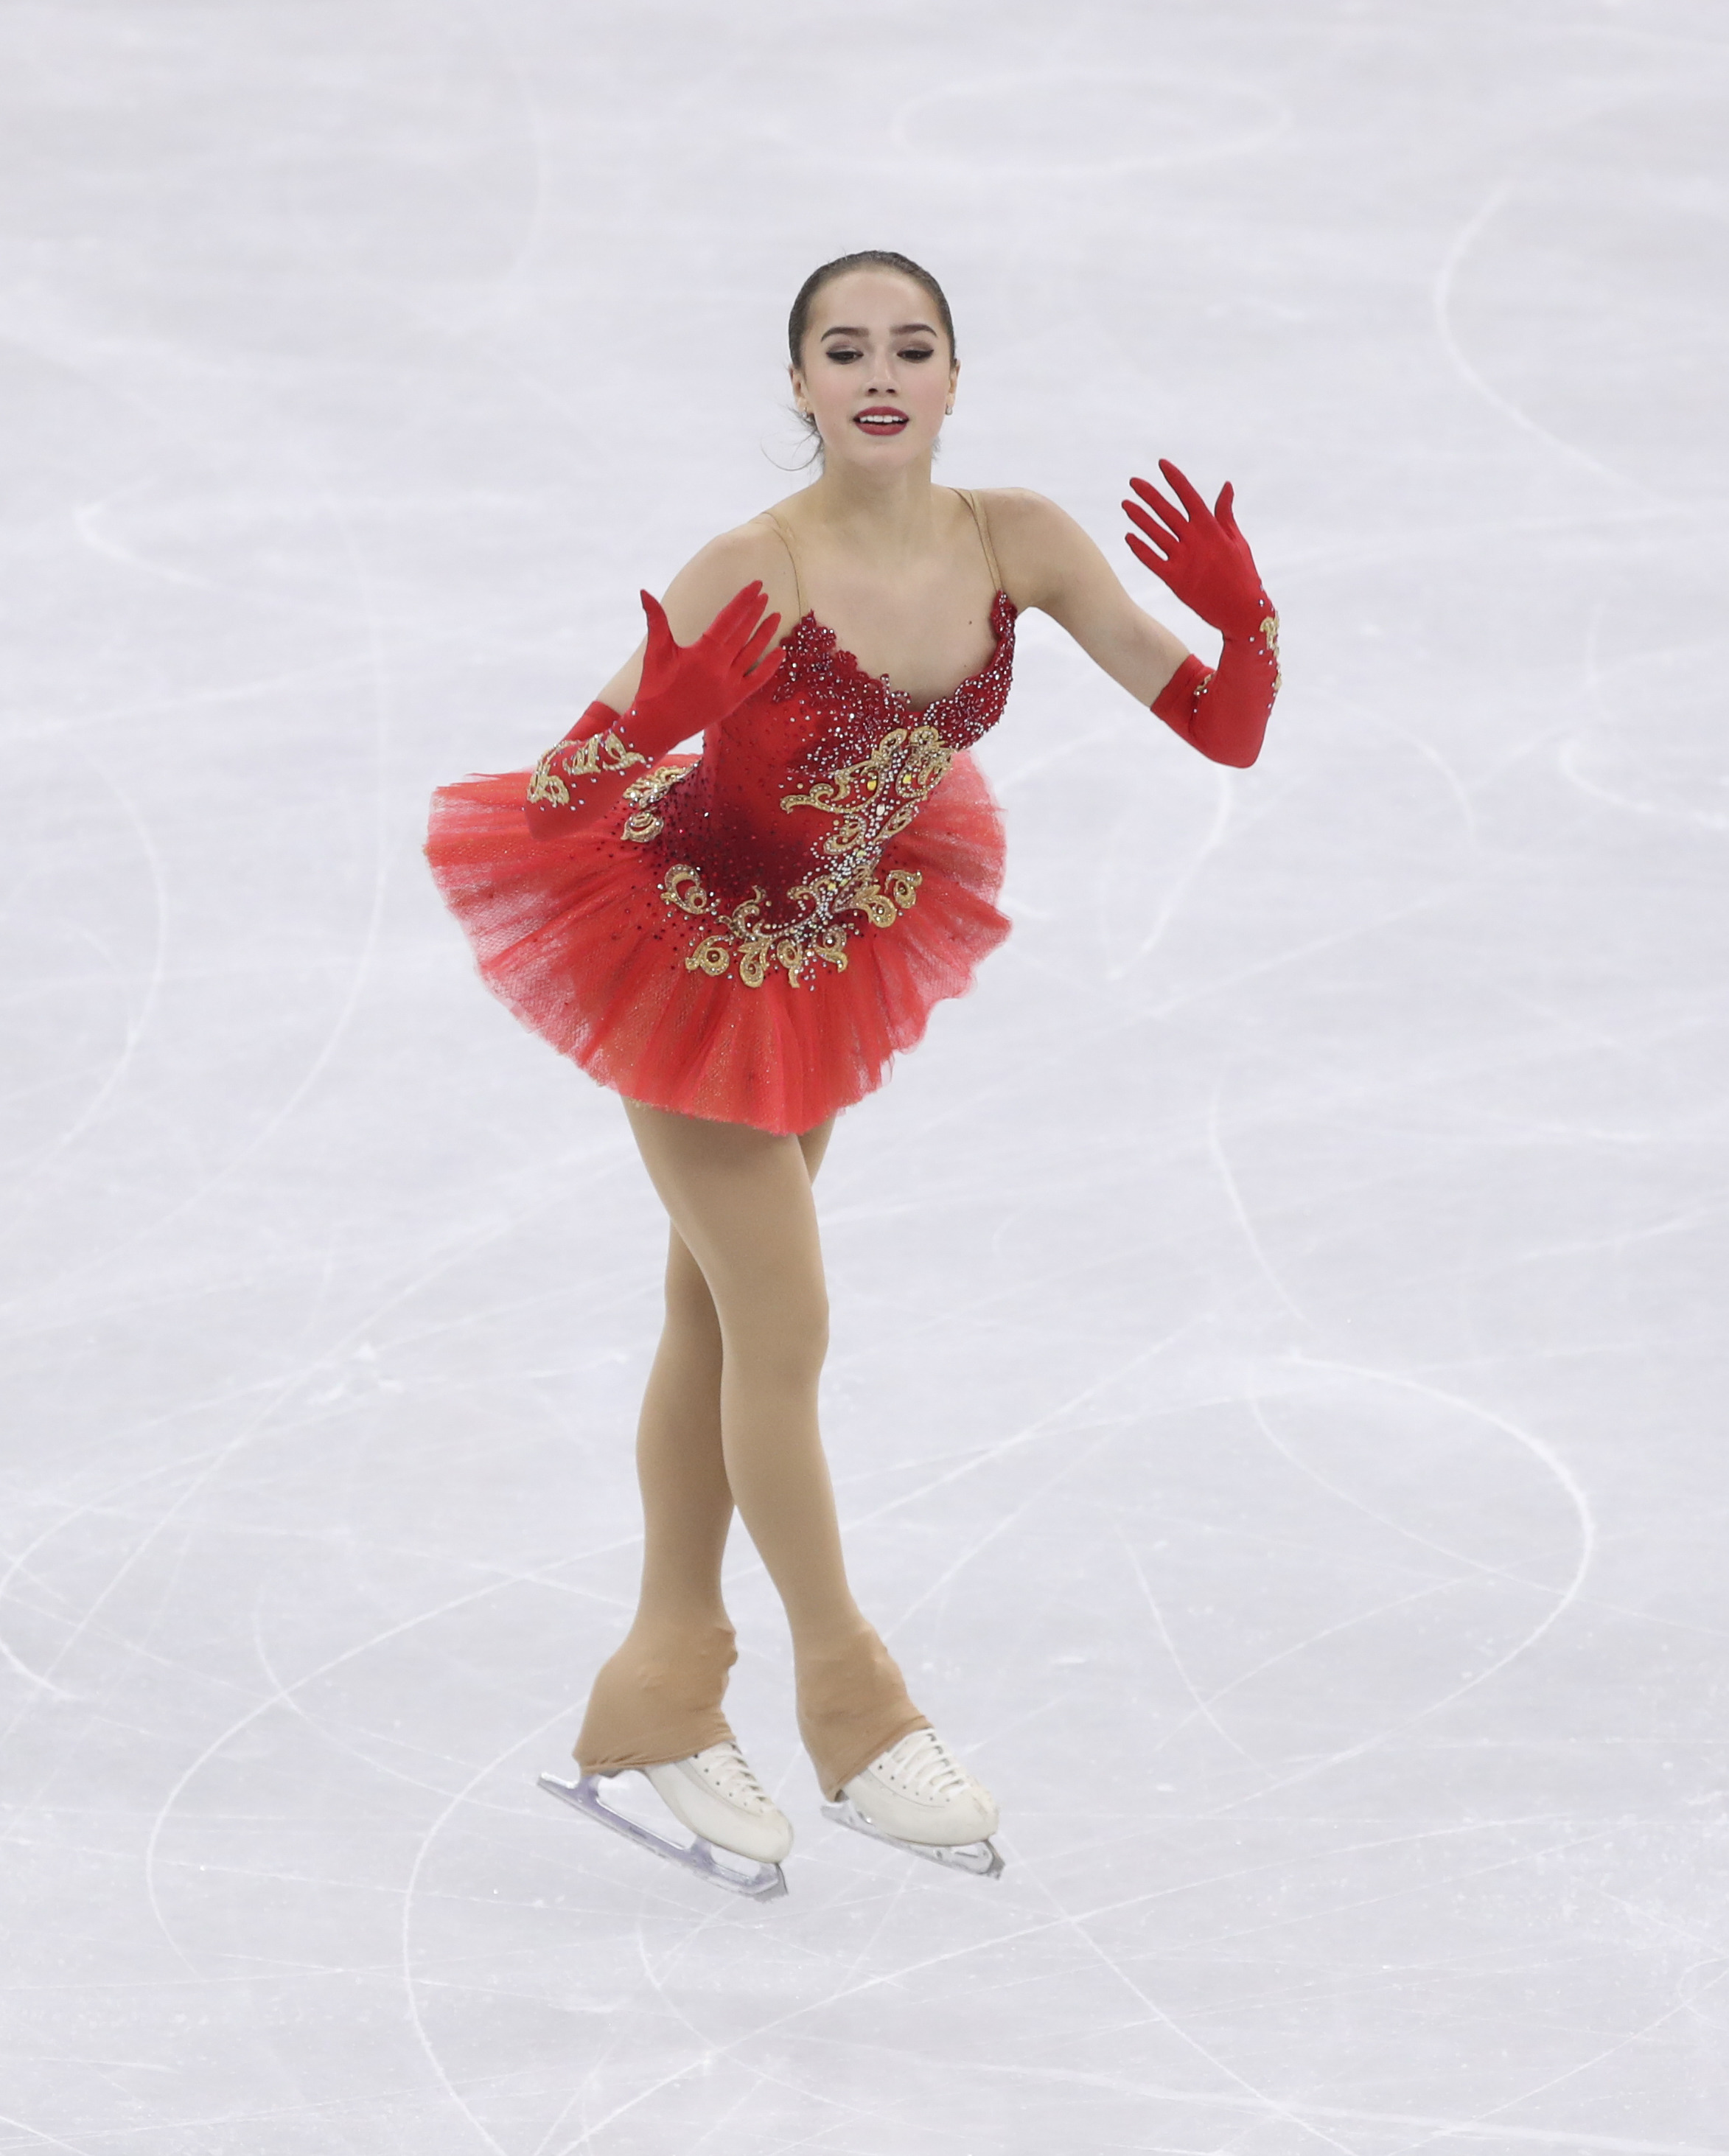 (冬奥会)(28)花样滑冰——女子单人滑:俄奥运选手扎吉托娃夺冠